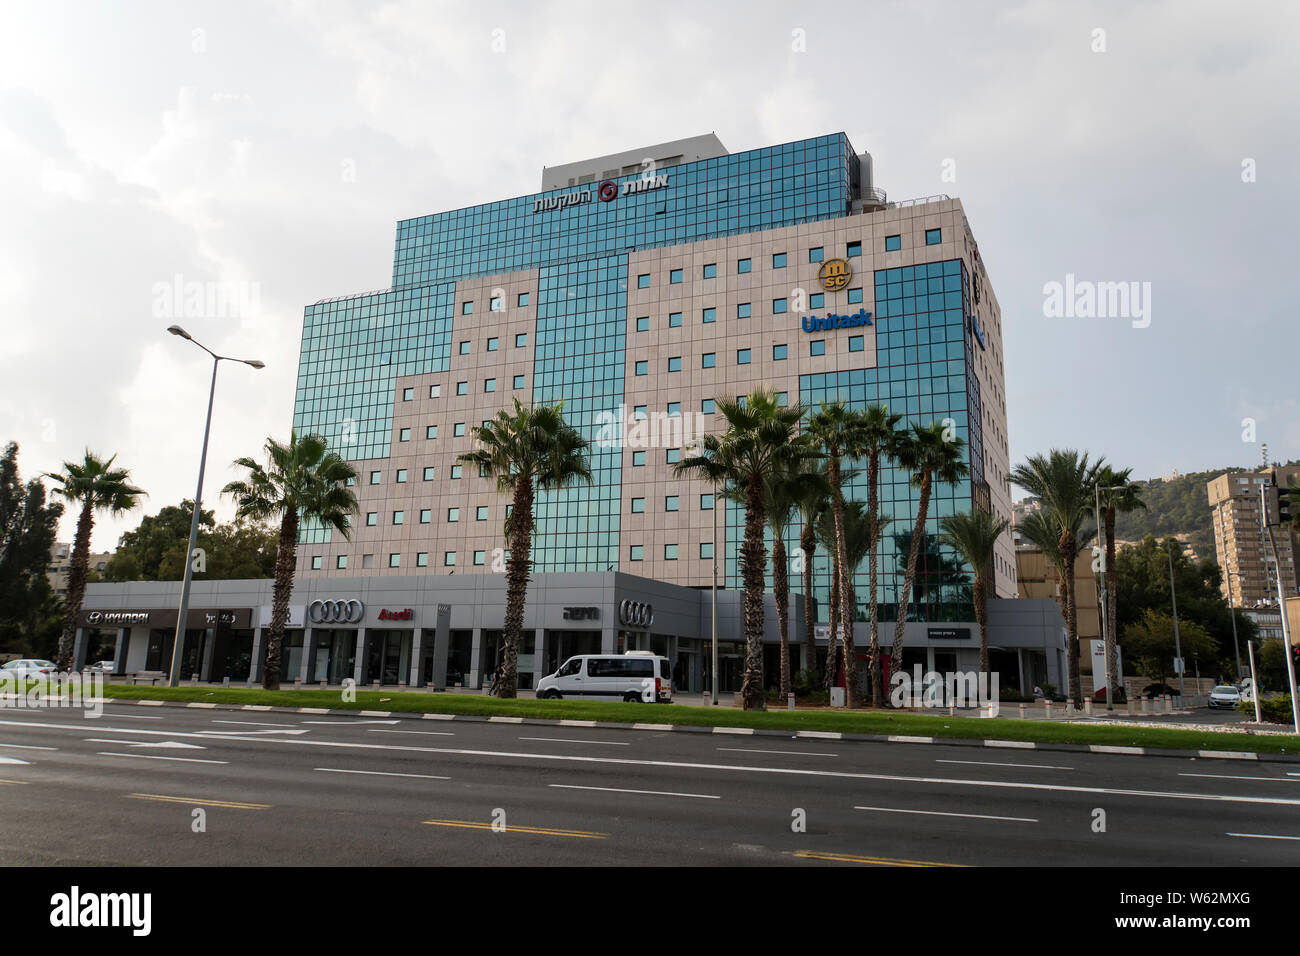 Haifa, Israel - 21. Oktober 2018: Modernes, mehrstöckiges Gebäude mit Audi, Hundai und Unitask Logos. Büros namhafter Unternehmen im israelischen Haifa Stockfoto